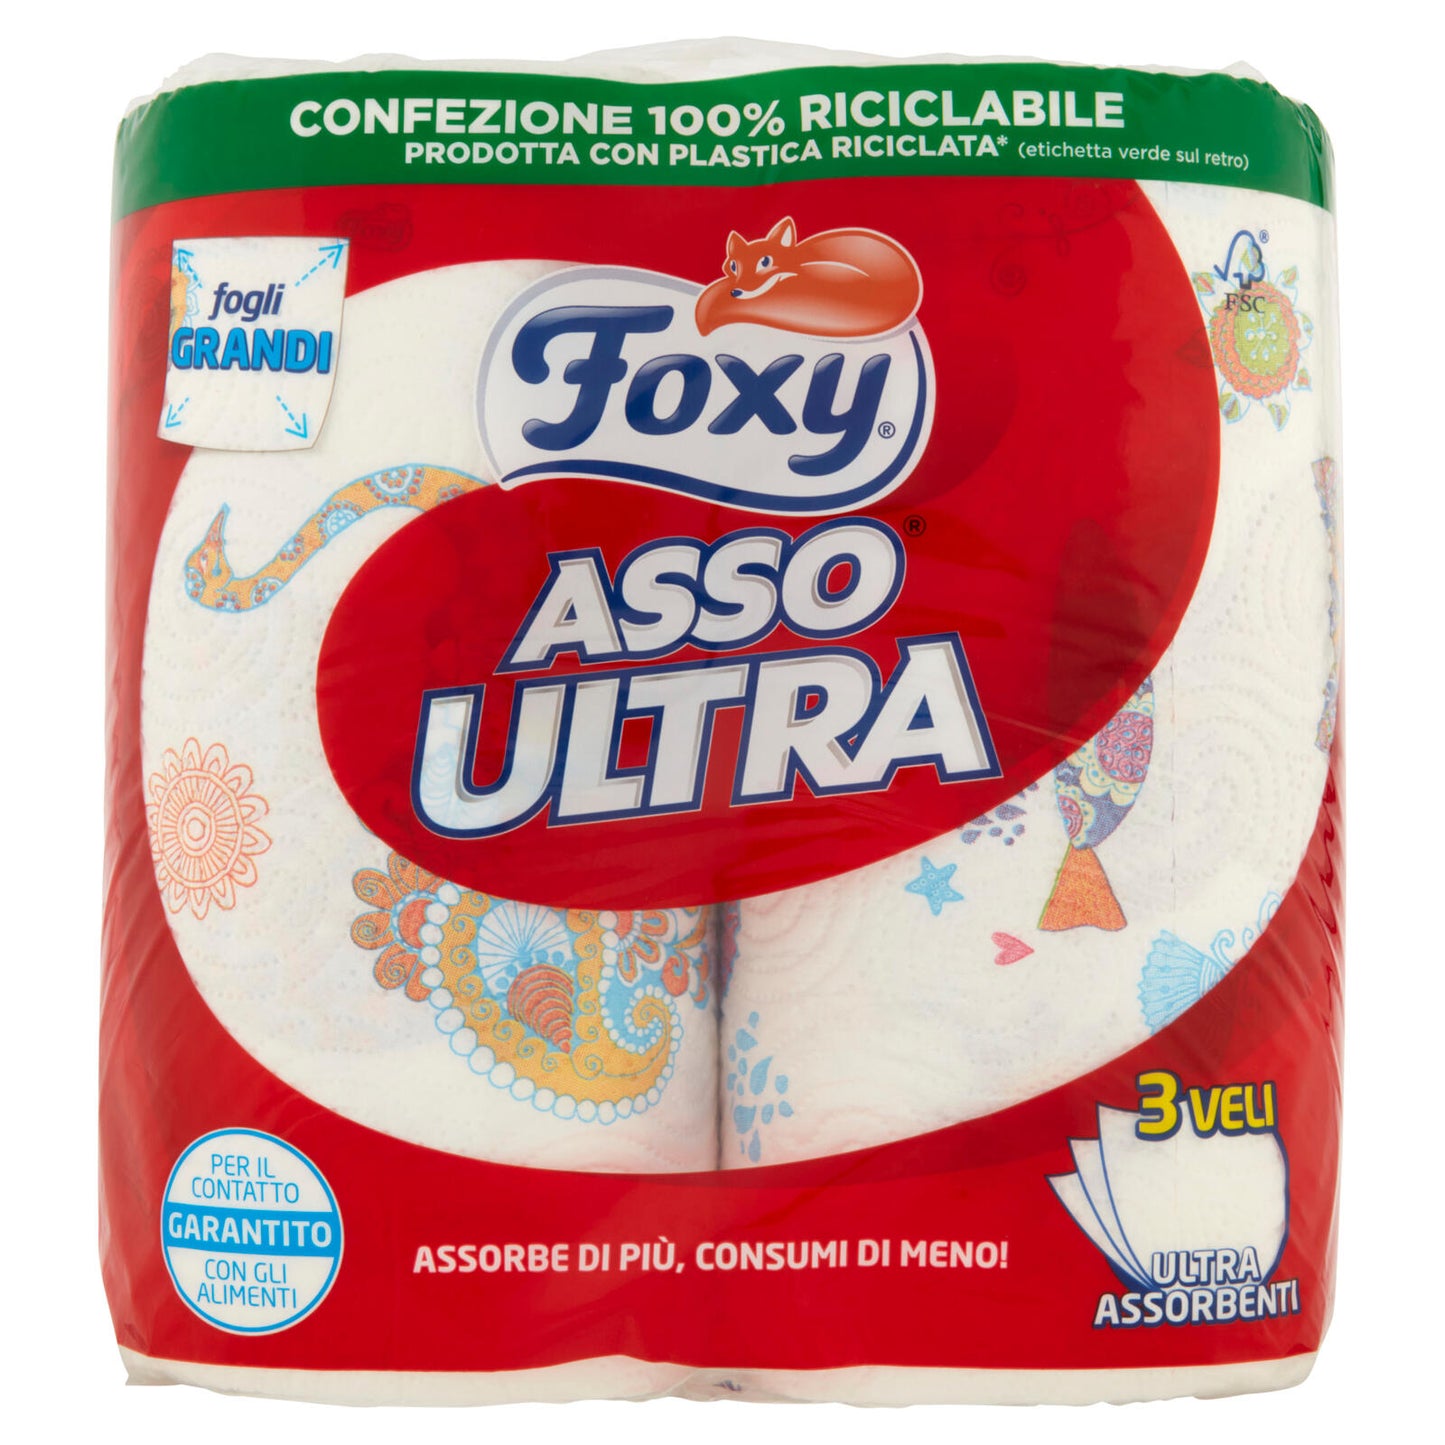 Foxy Asso Ultra 2 pz